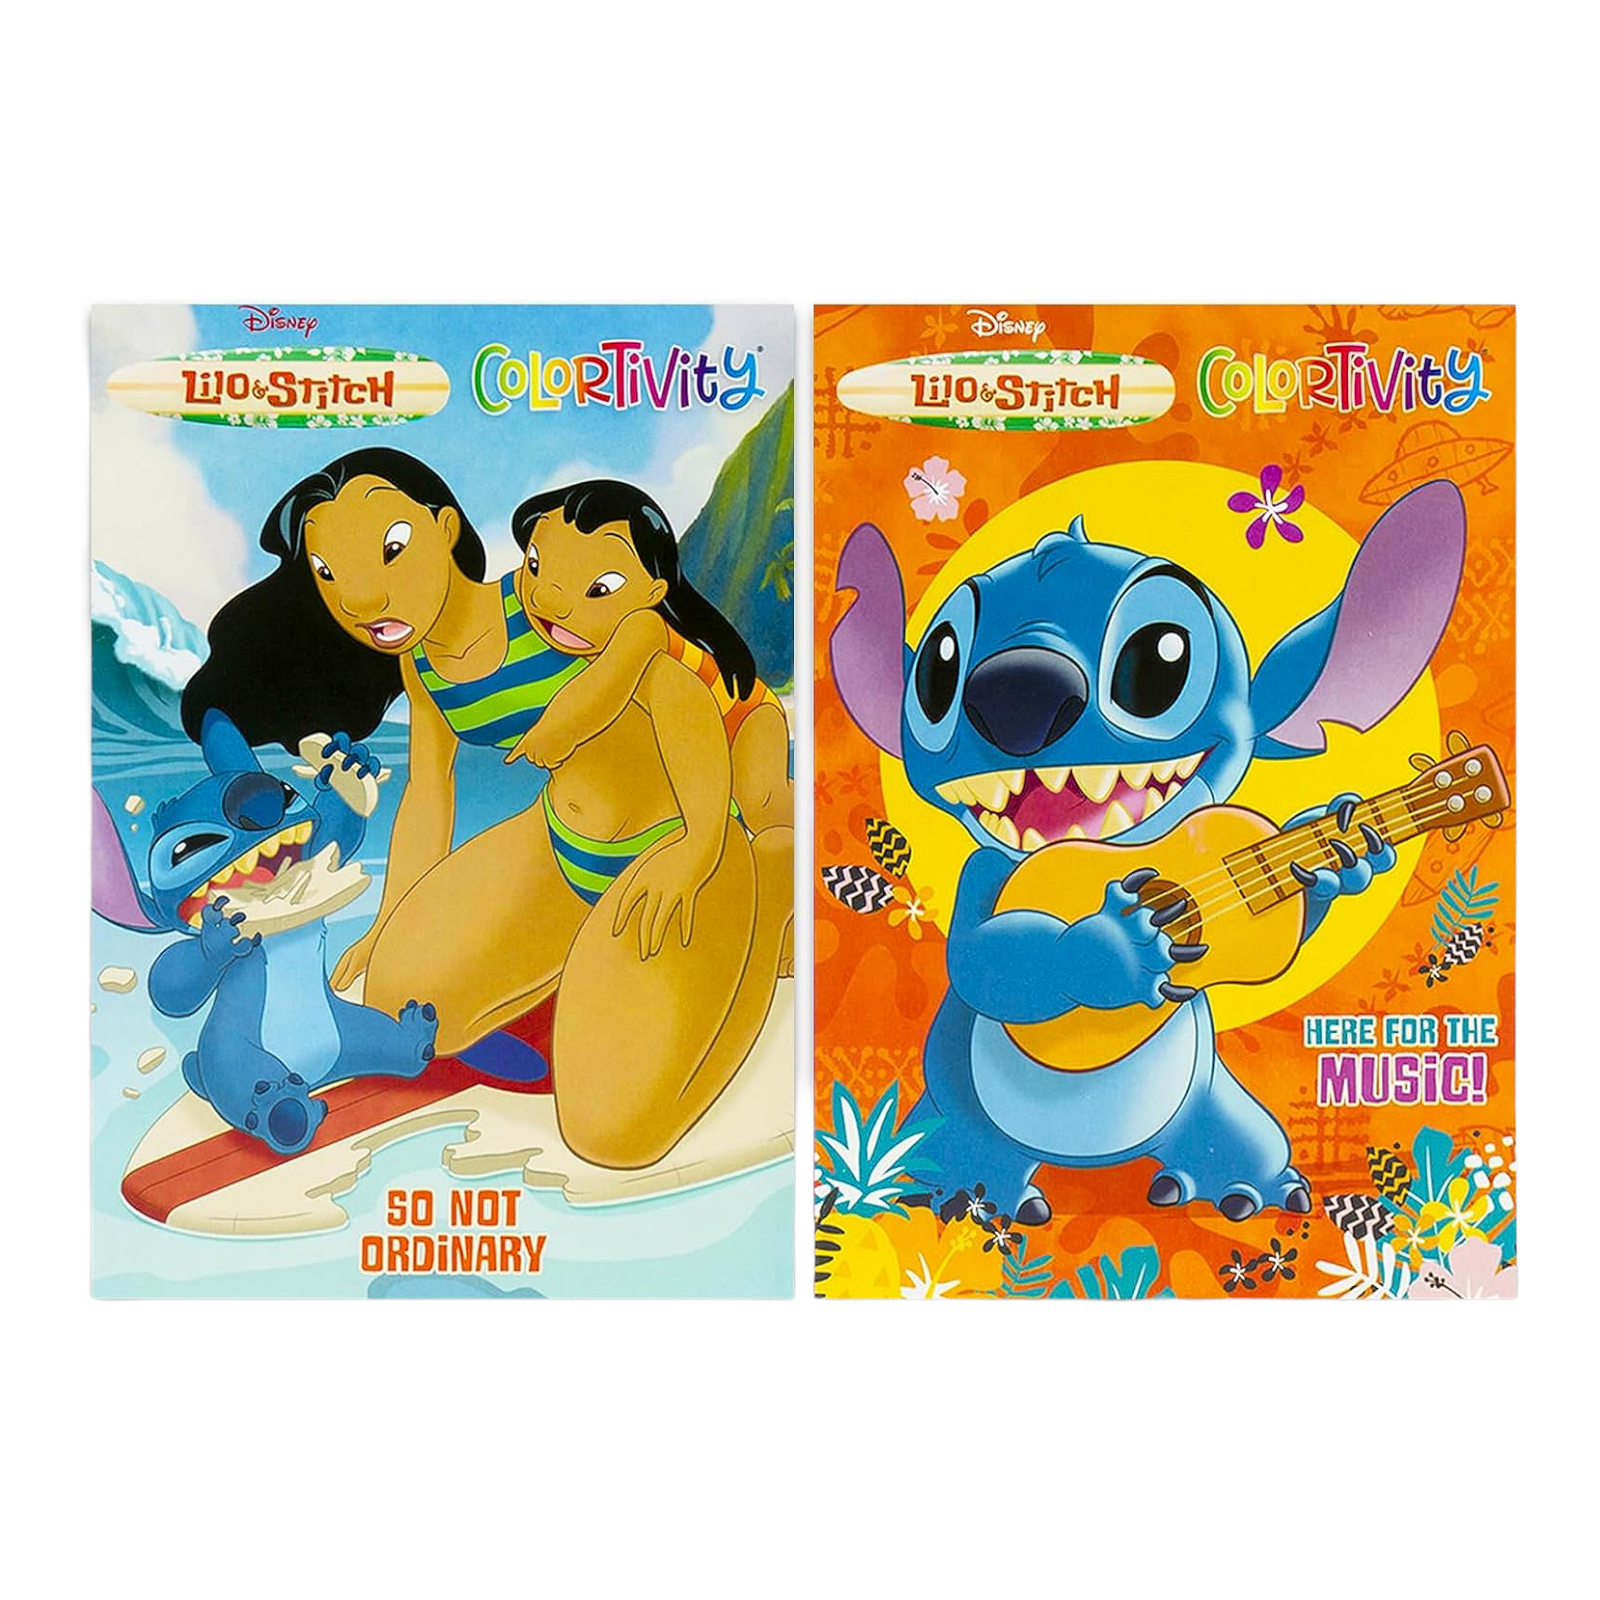 Lilo & Stitch Coloring Book: Buy Lilo & Stitch Coloring Book by